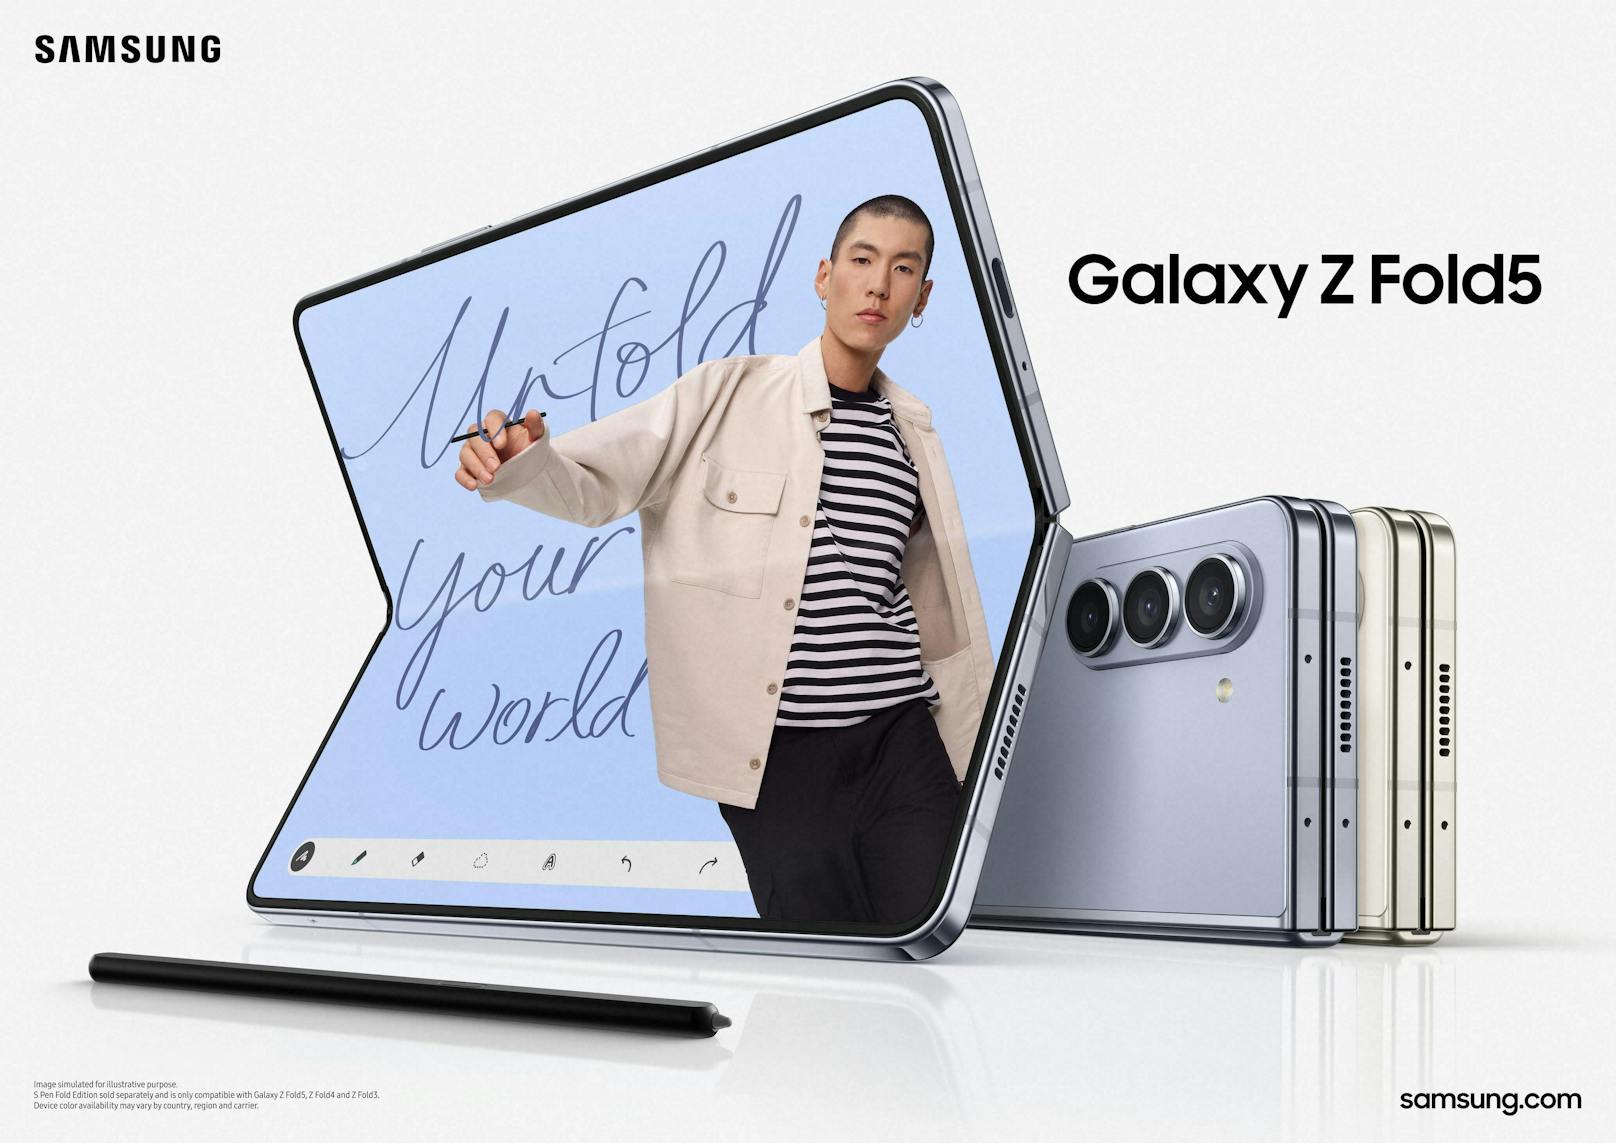 Das Samsung Galaxy Fold5 hat einen robusteren Bildschirm spendiert bekommen und schließt nun vollständig ab.